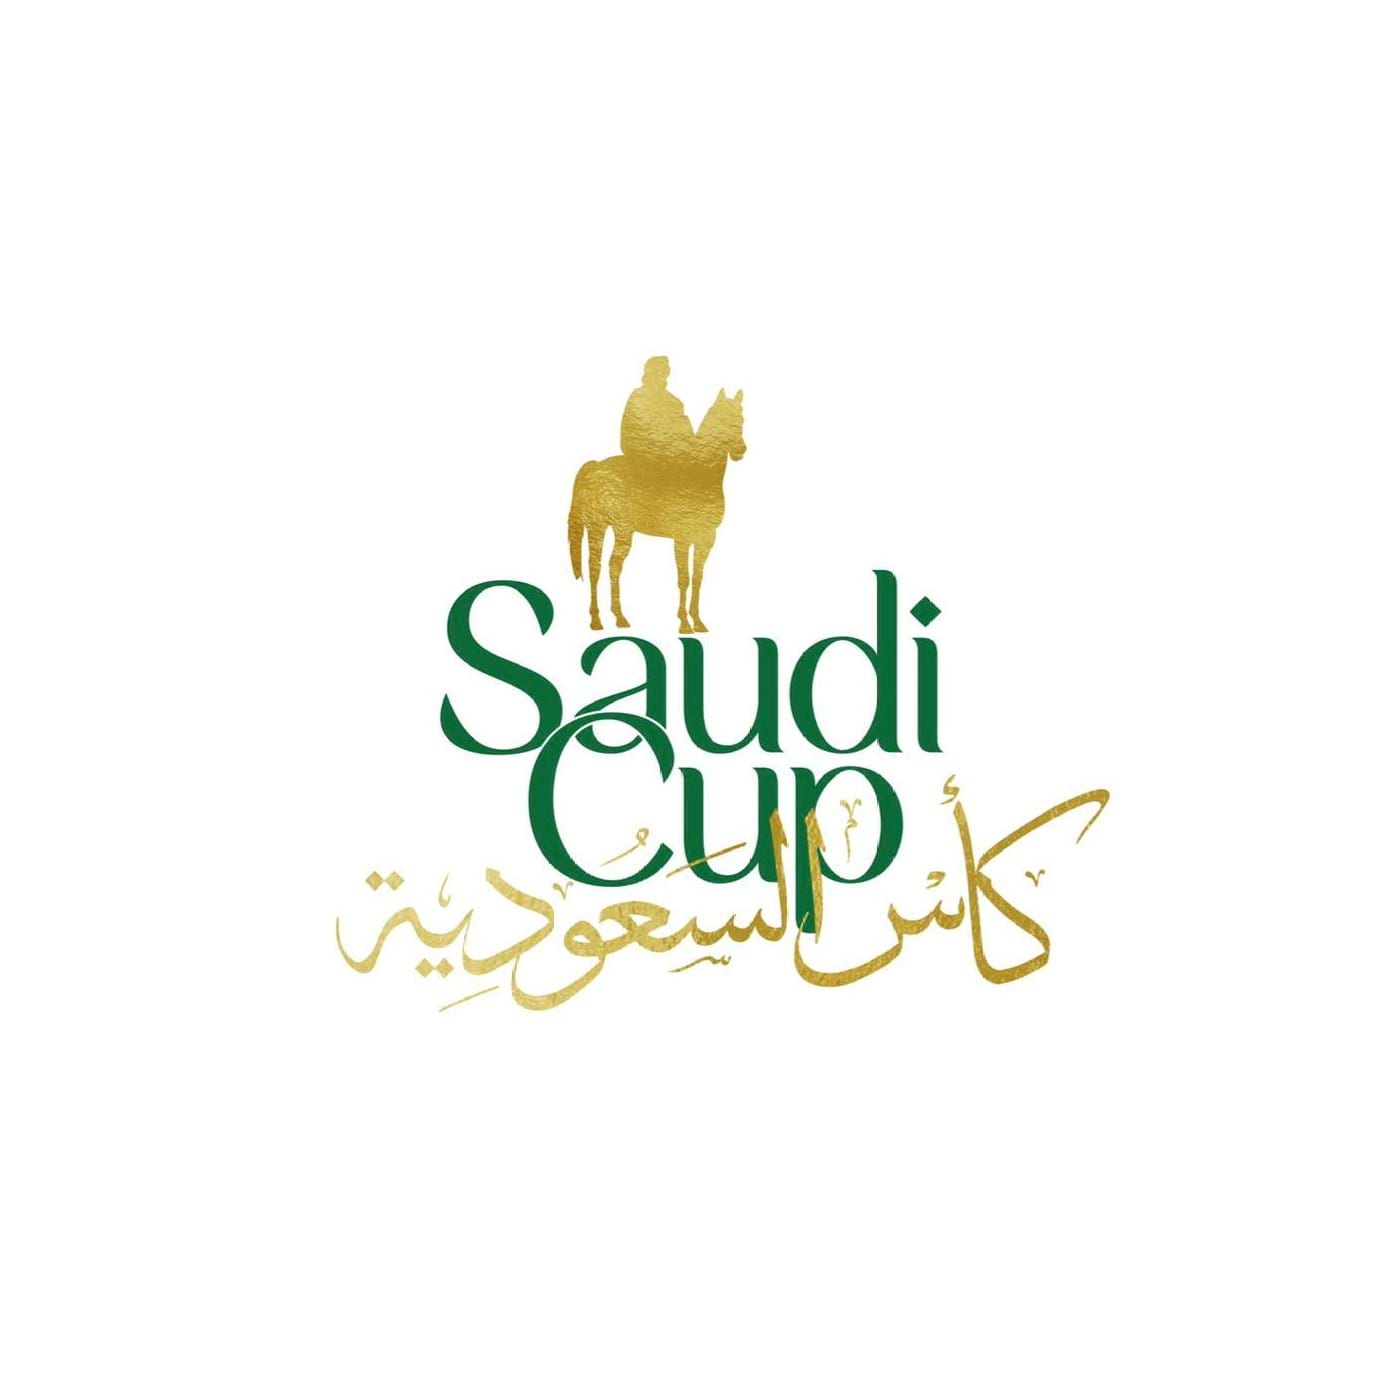 SaudiCup logo - square white v4.jpg